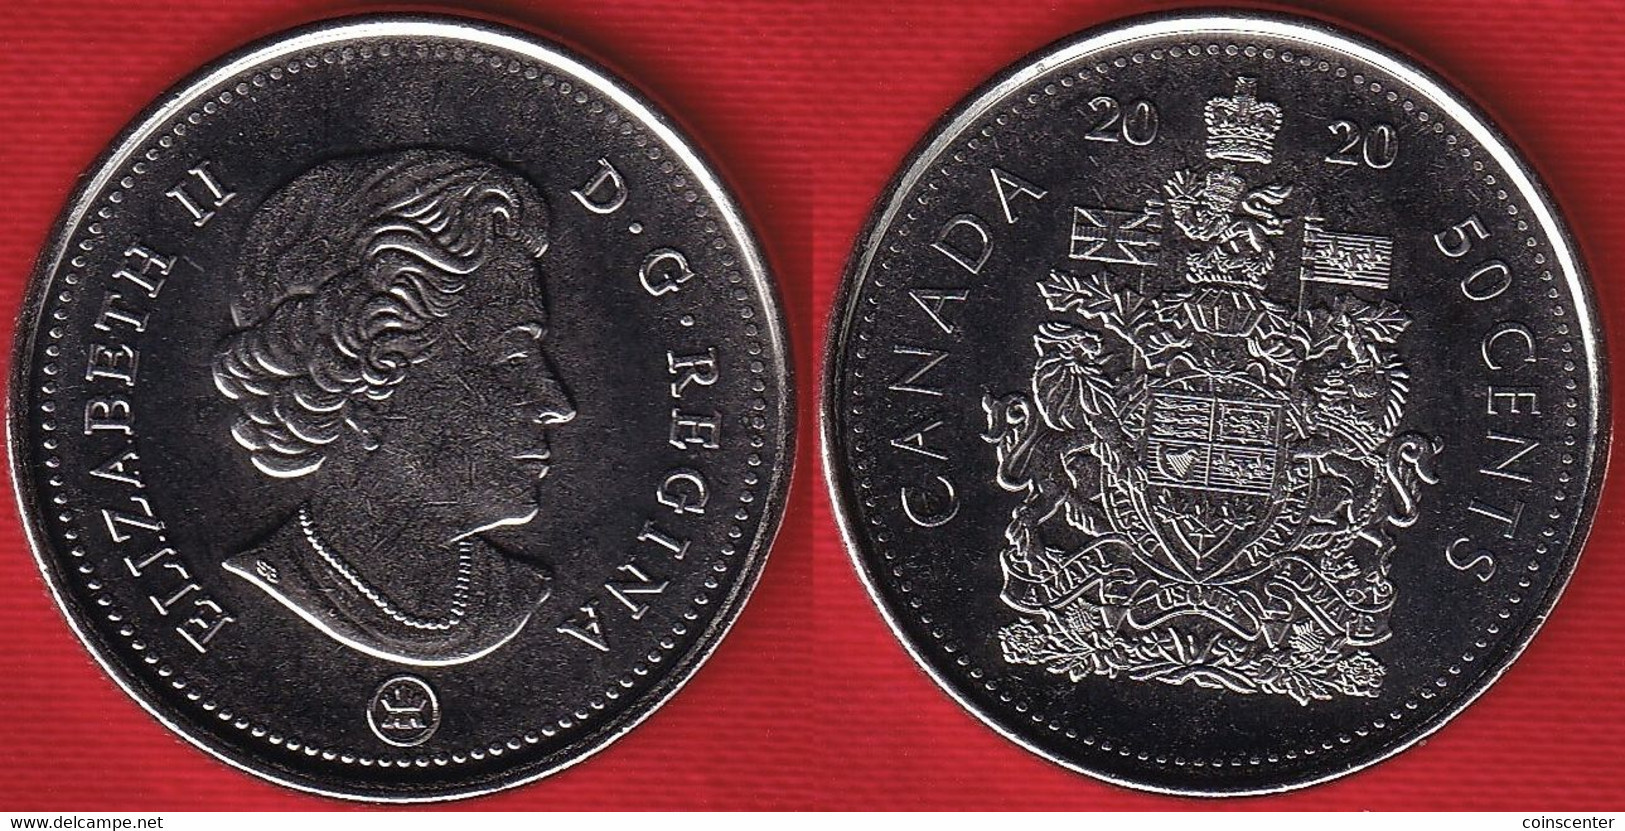 Canada 50 Cents 2020 Km#494 "4th Portrait" UNC - Canada